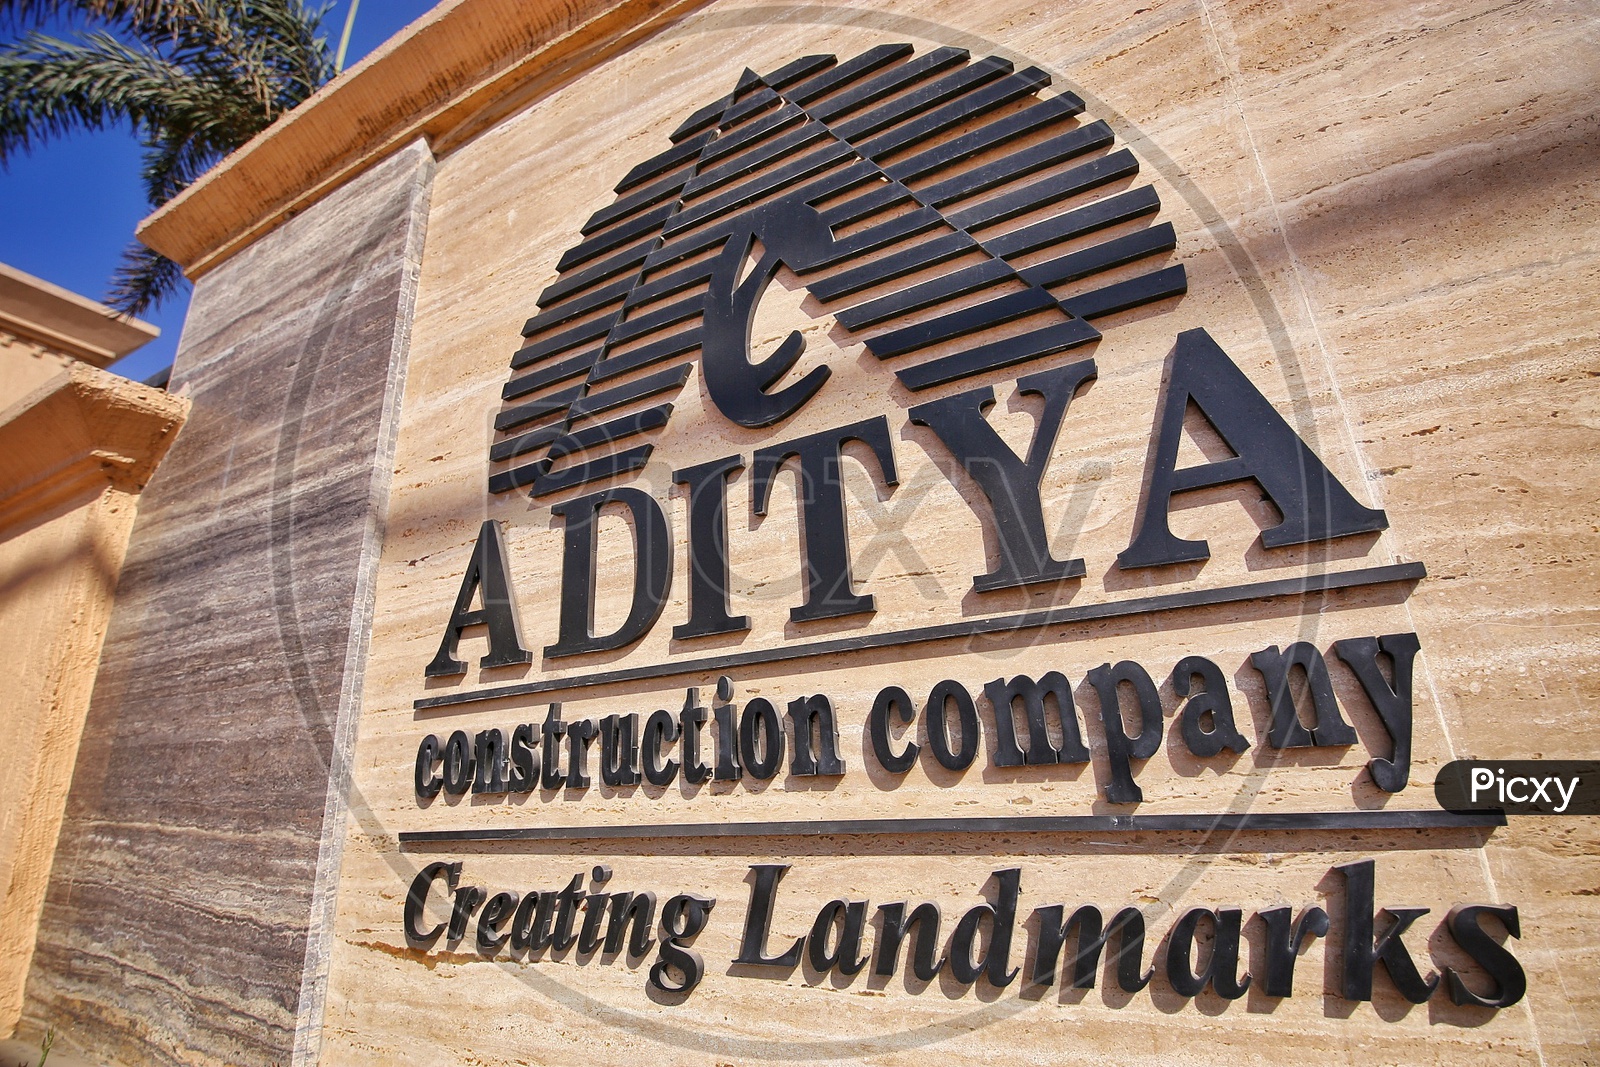 Aditya Heights Construction Company  Name Board At Apartments Entrance